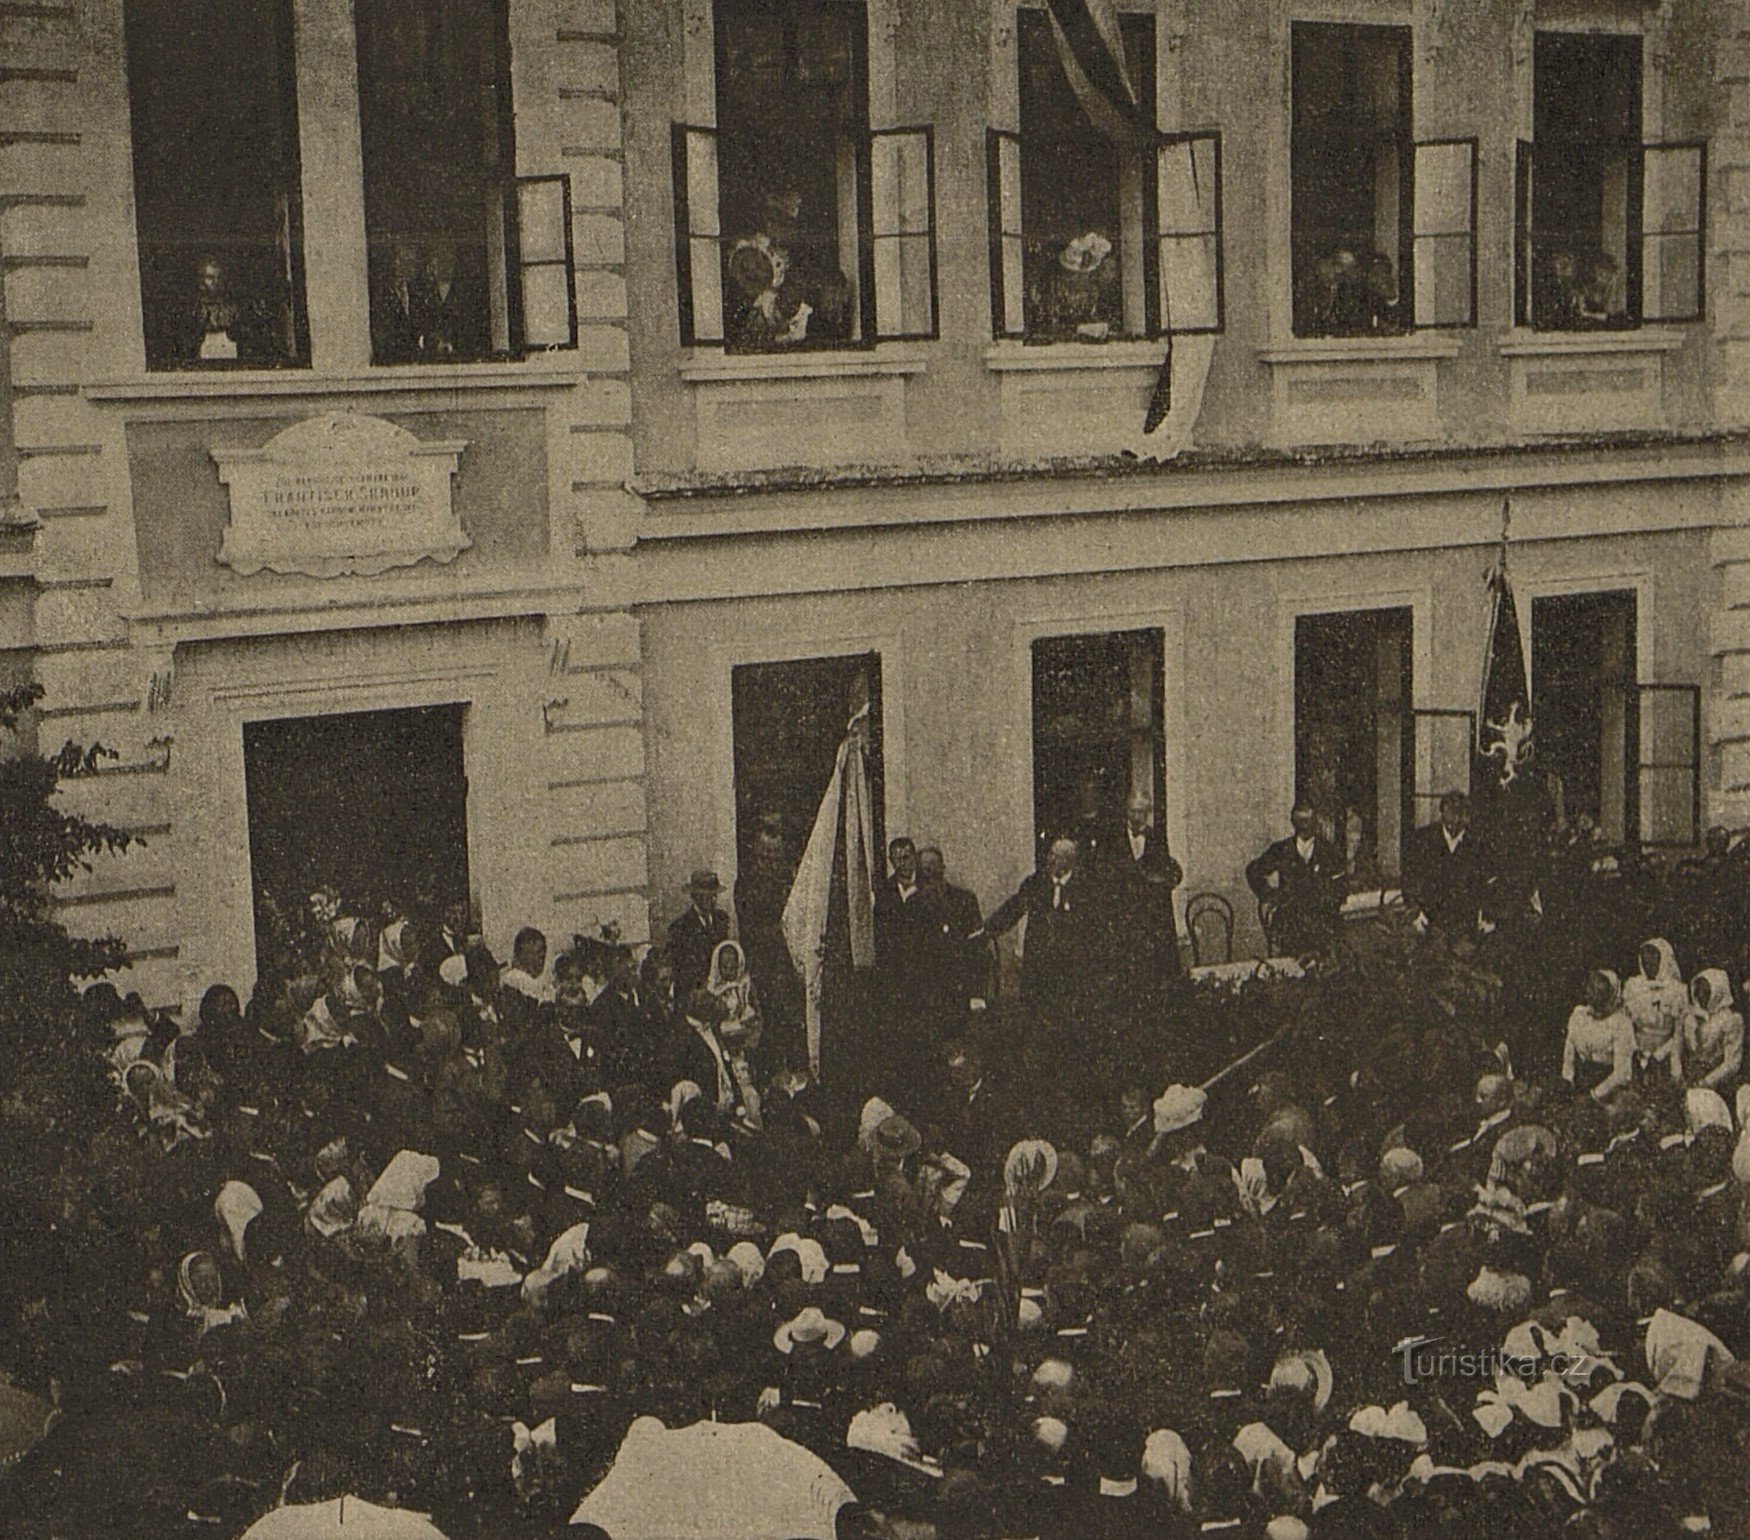 Slovesno odkritje spominske plošče Františku Škroupu v Osicah leta 1901